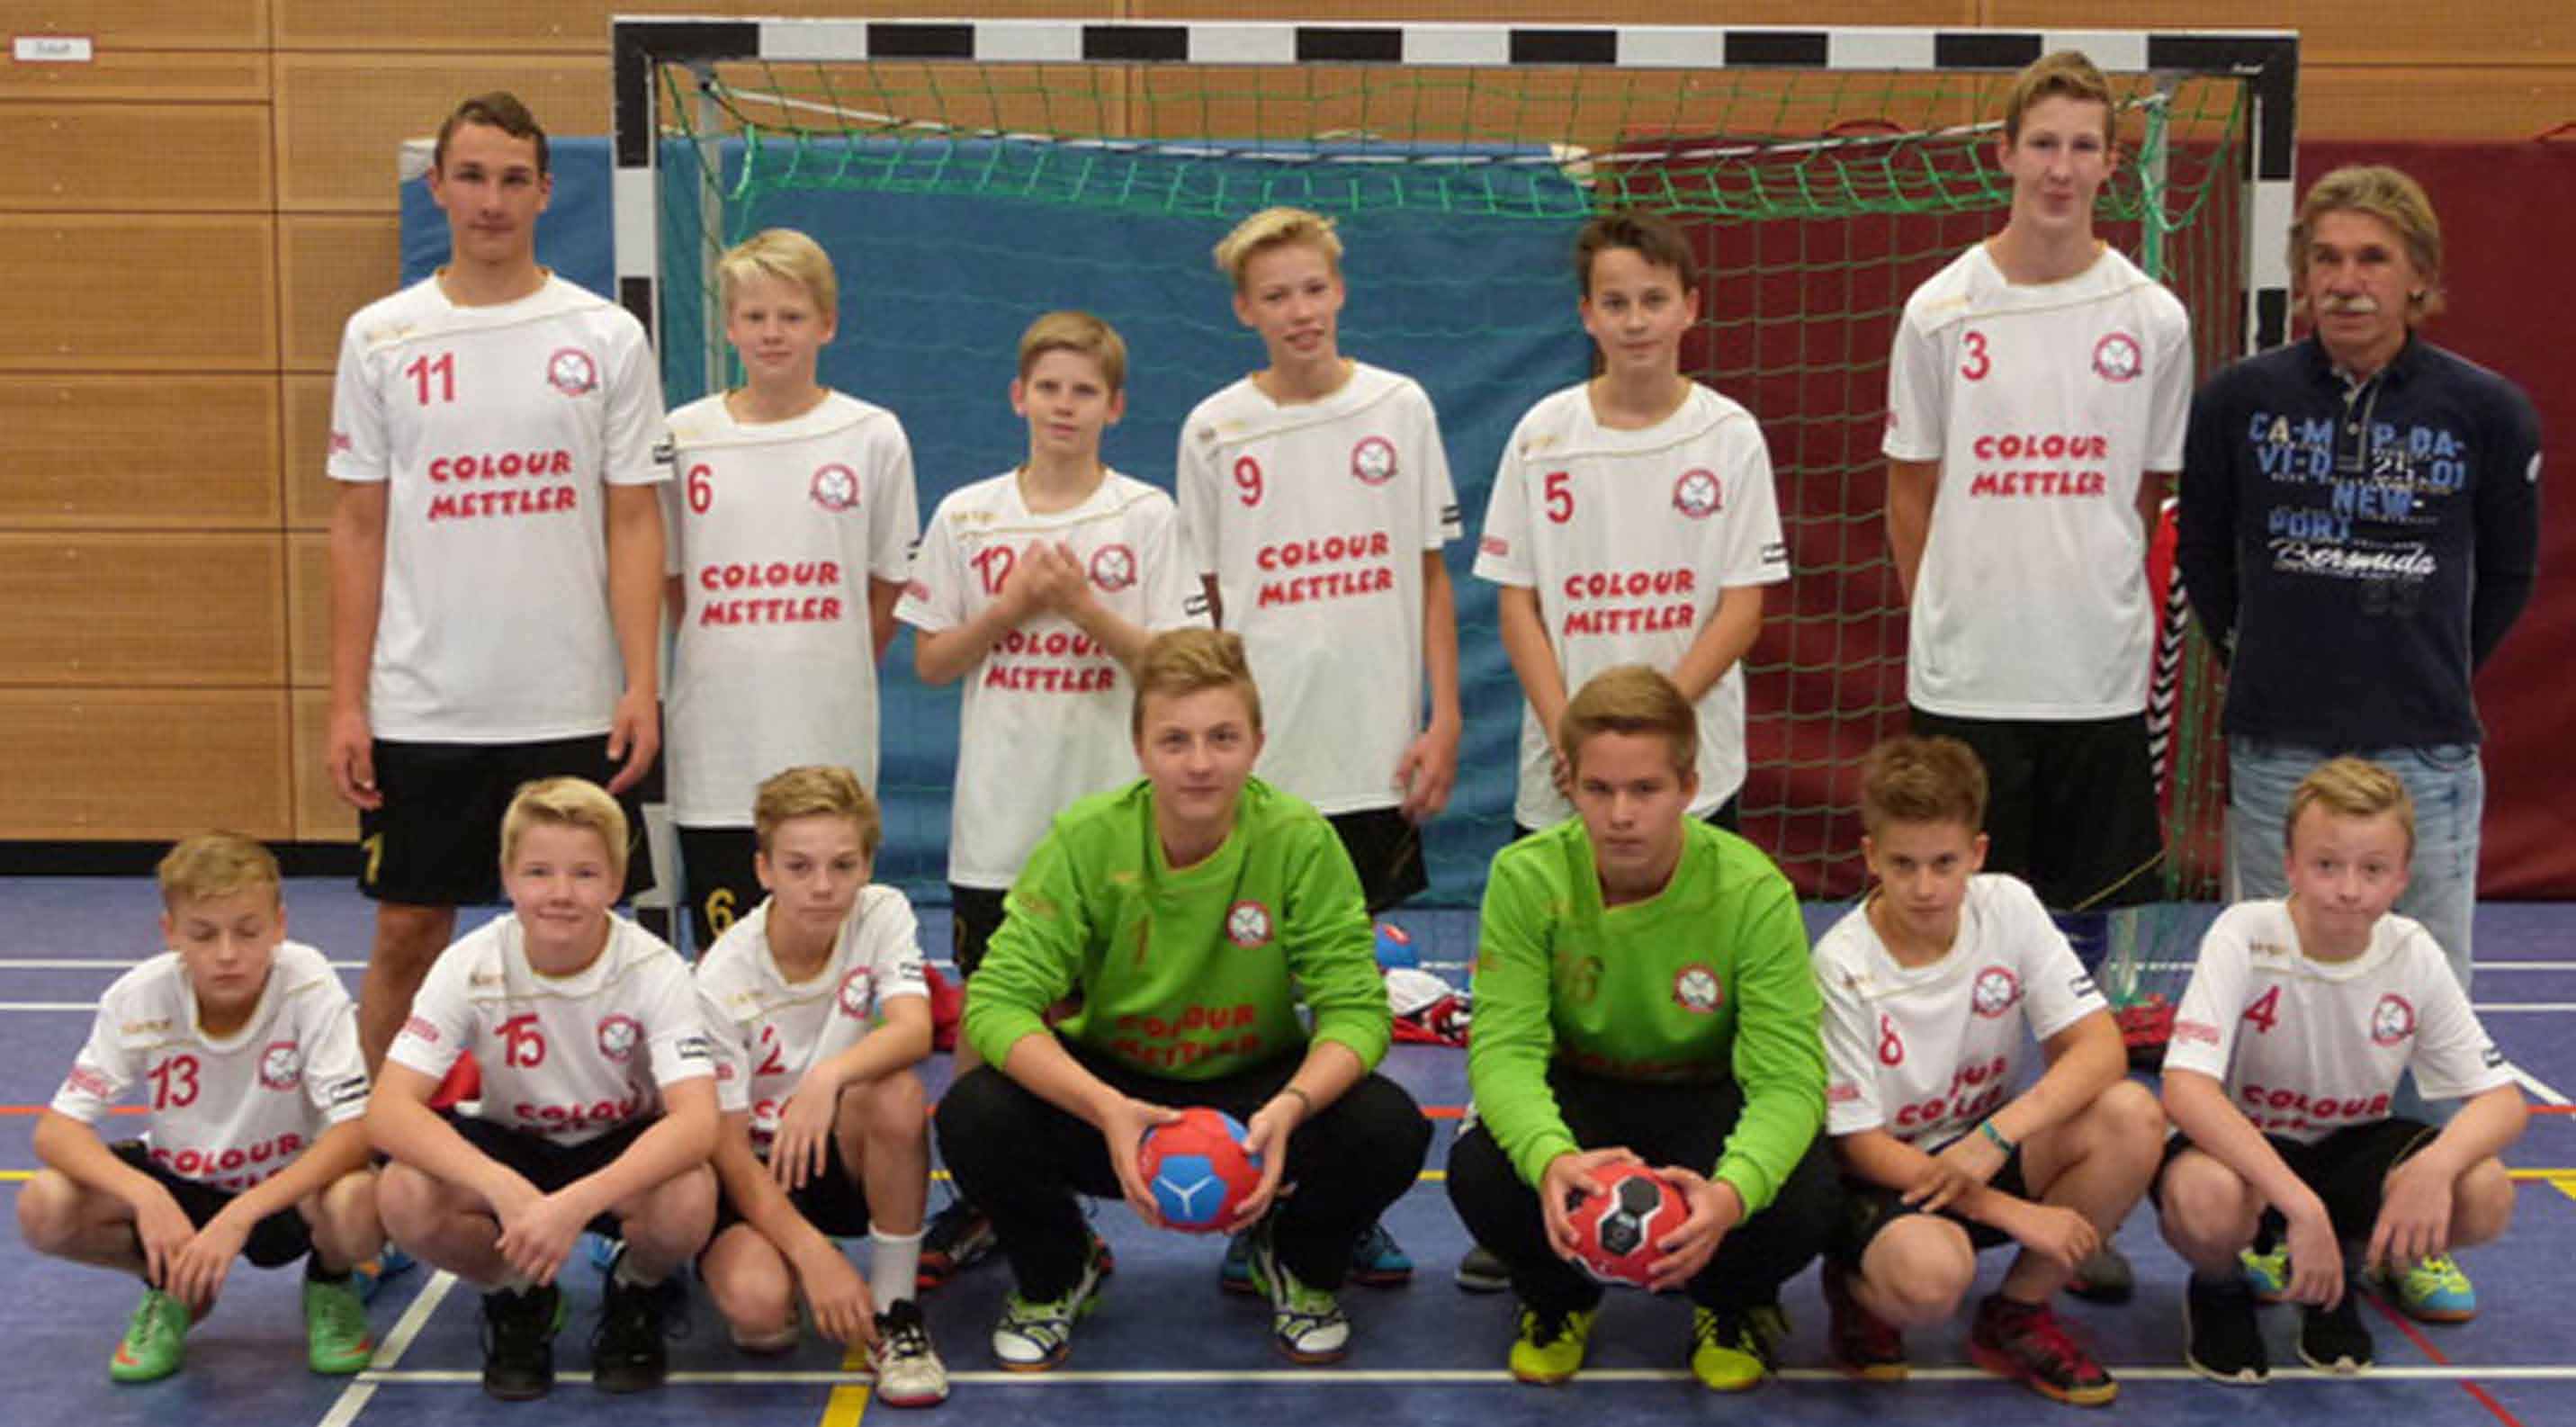 Handball - Kinder und Jugend Unsere Trainer sind erfahrende Handballer. Spiel in einer Mannschaft Handball und gewinn gemeinsam mit deinen Teamkameraden. In der Halle und draußen bei Turnieren.